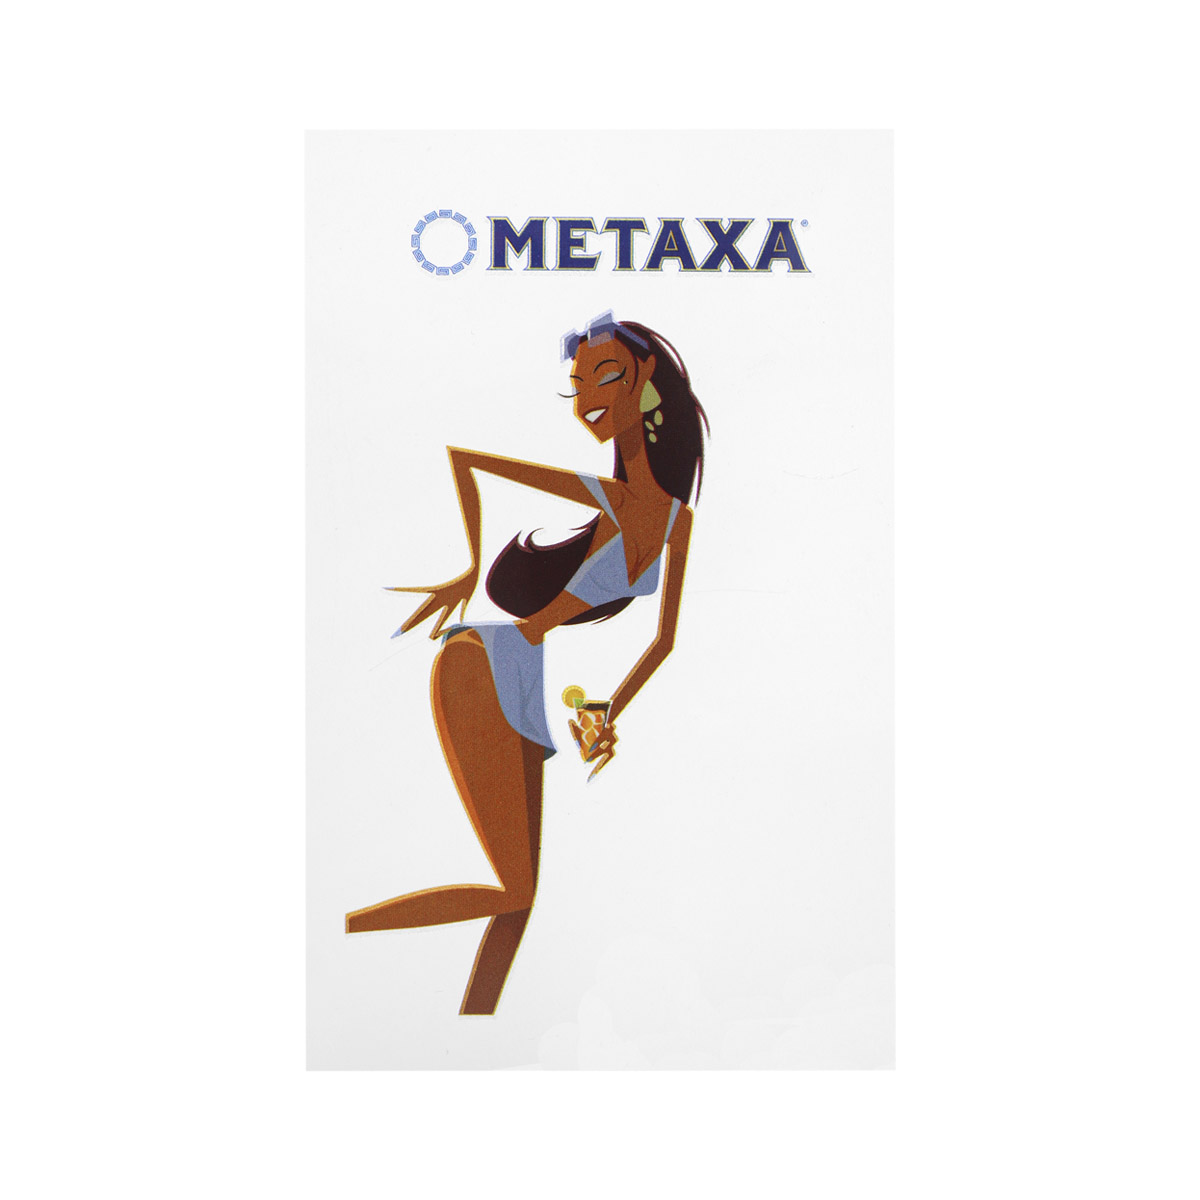  METAXA 10.5  6  !